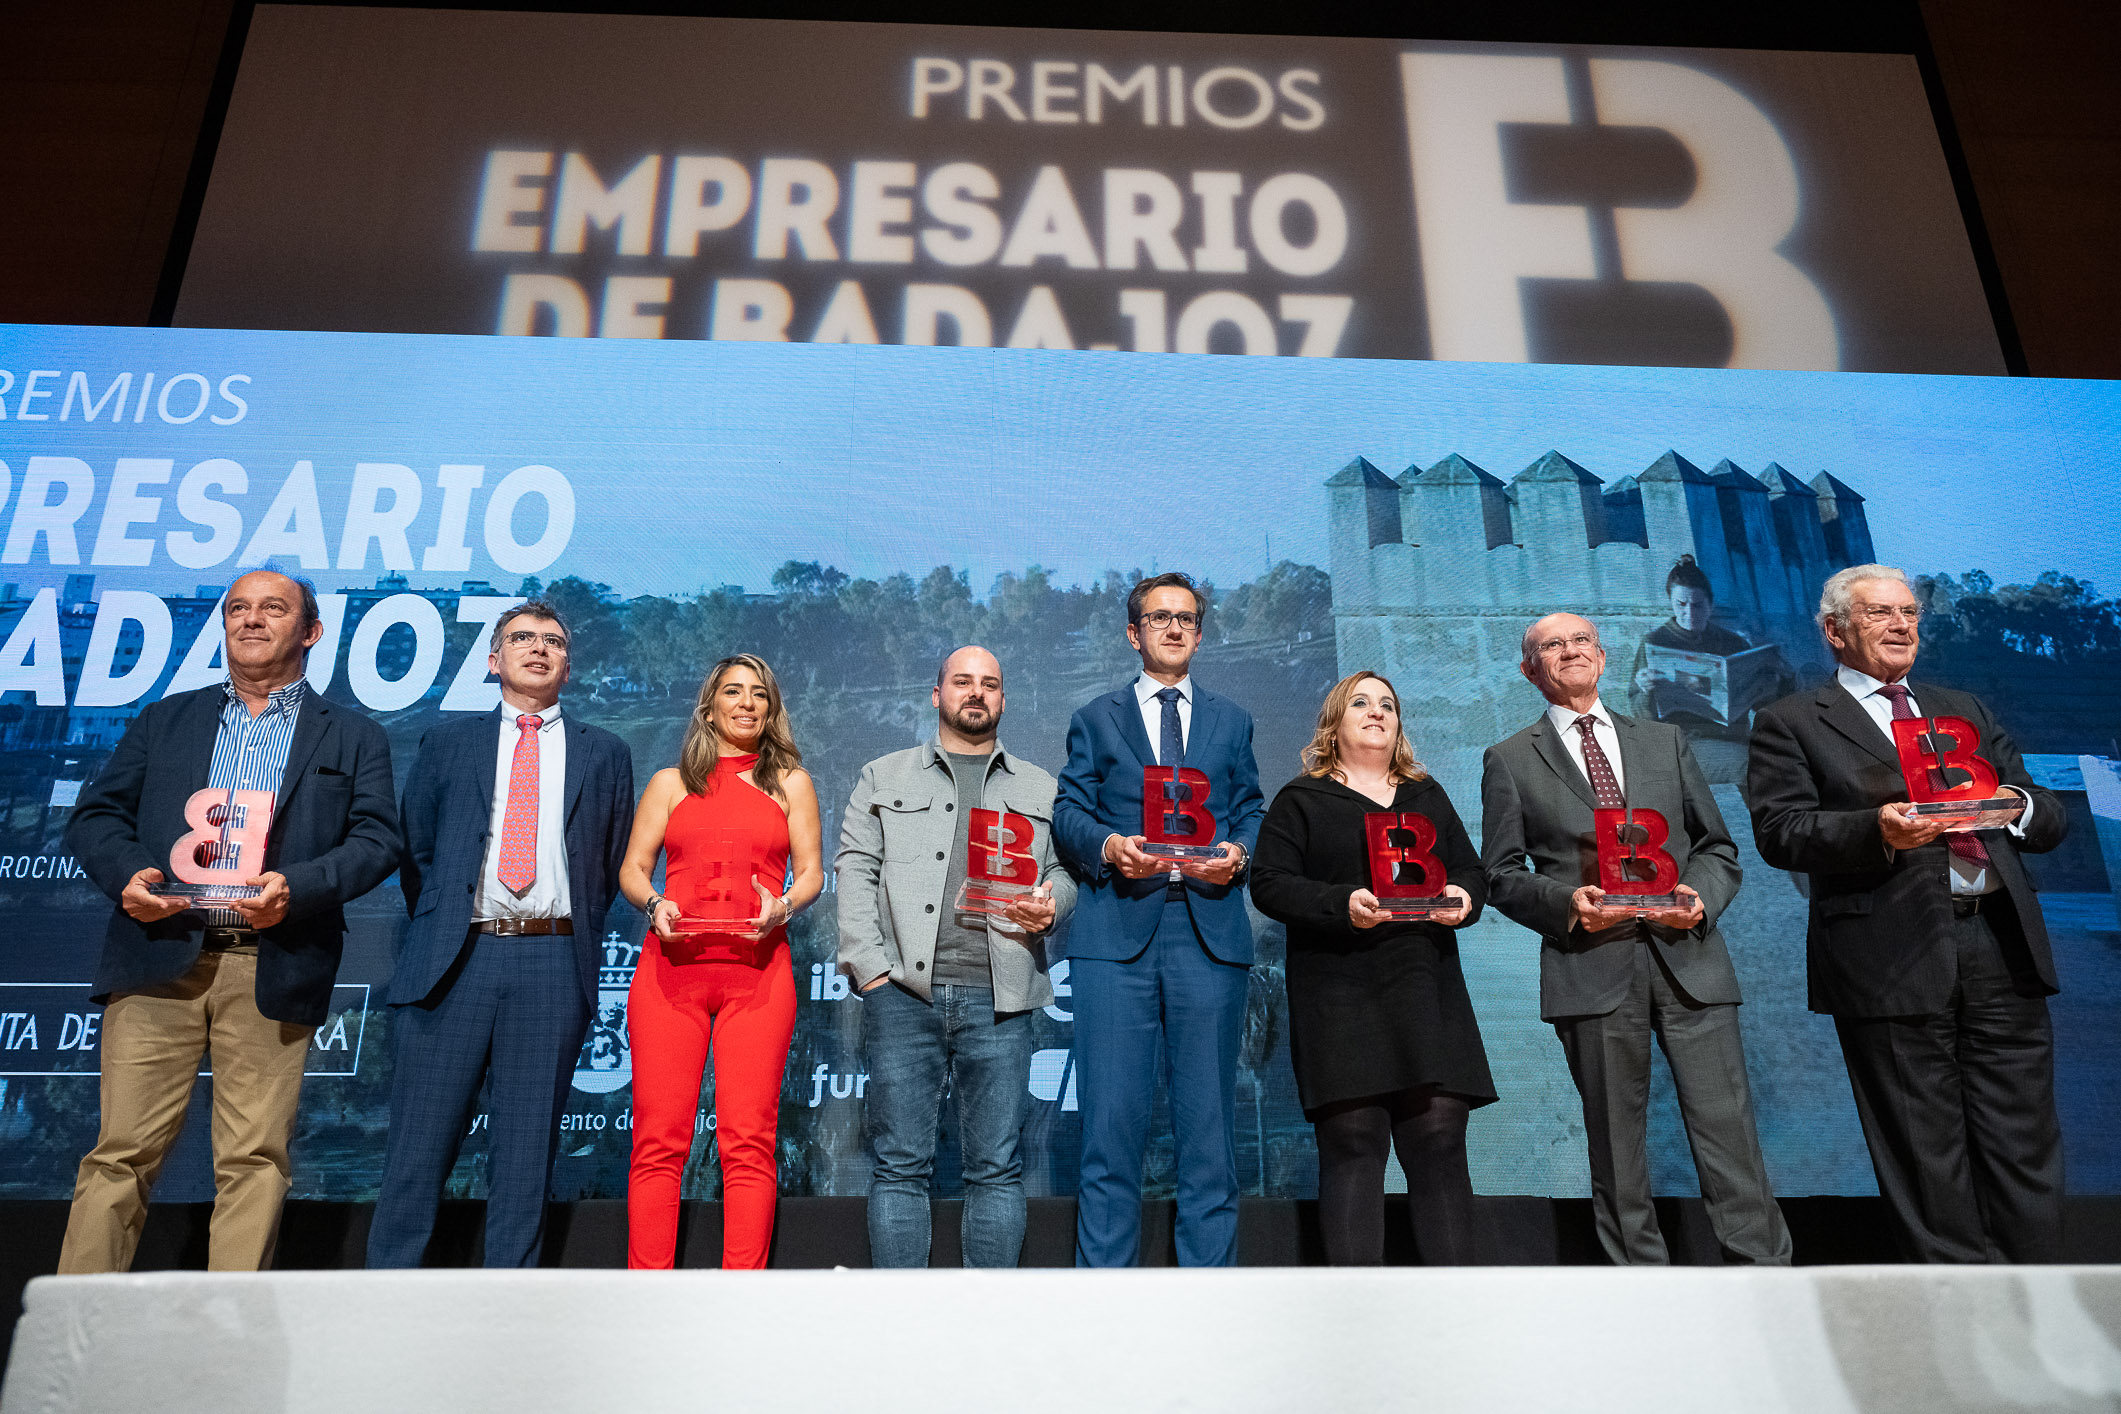 Image 14 of article Guardiola alaba el trabajo de los empresarios de Badajoz y su contribución a la economía, el empleo y el desarrollo de Extremadura